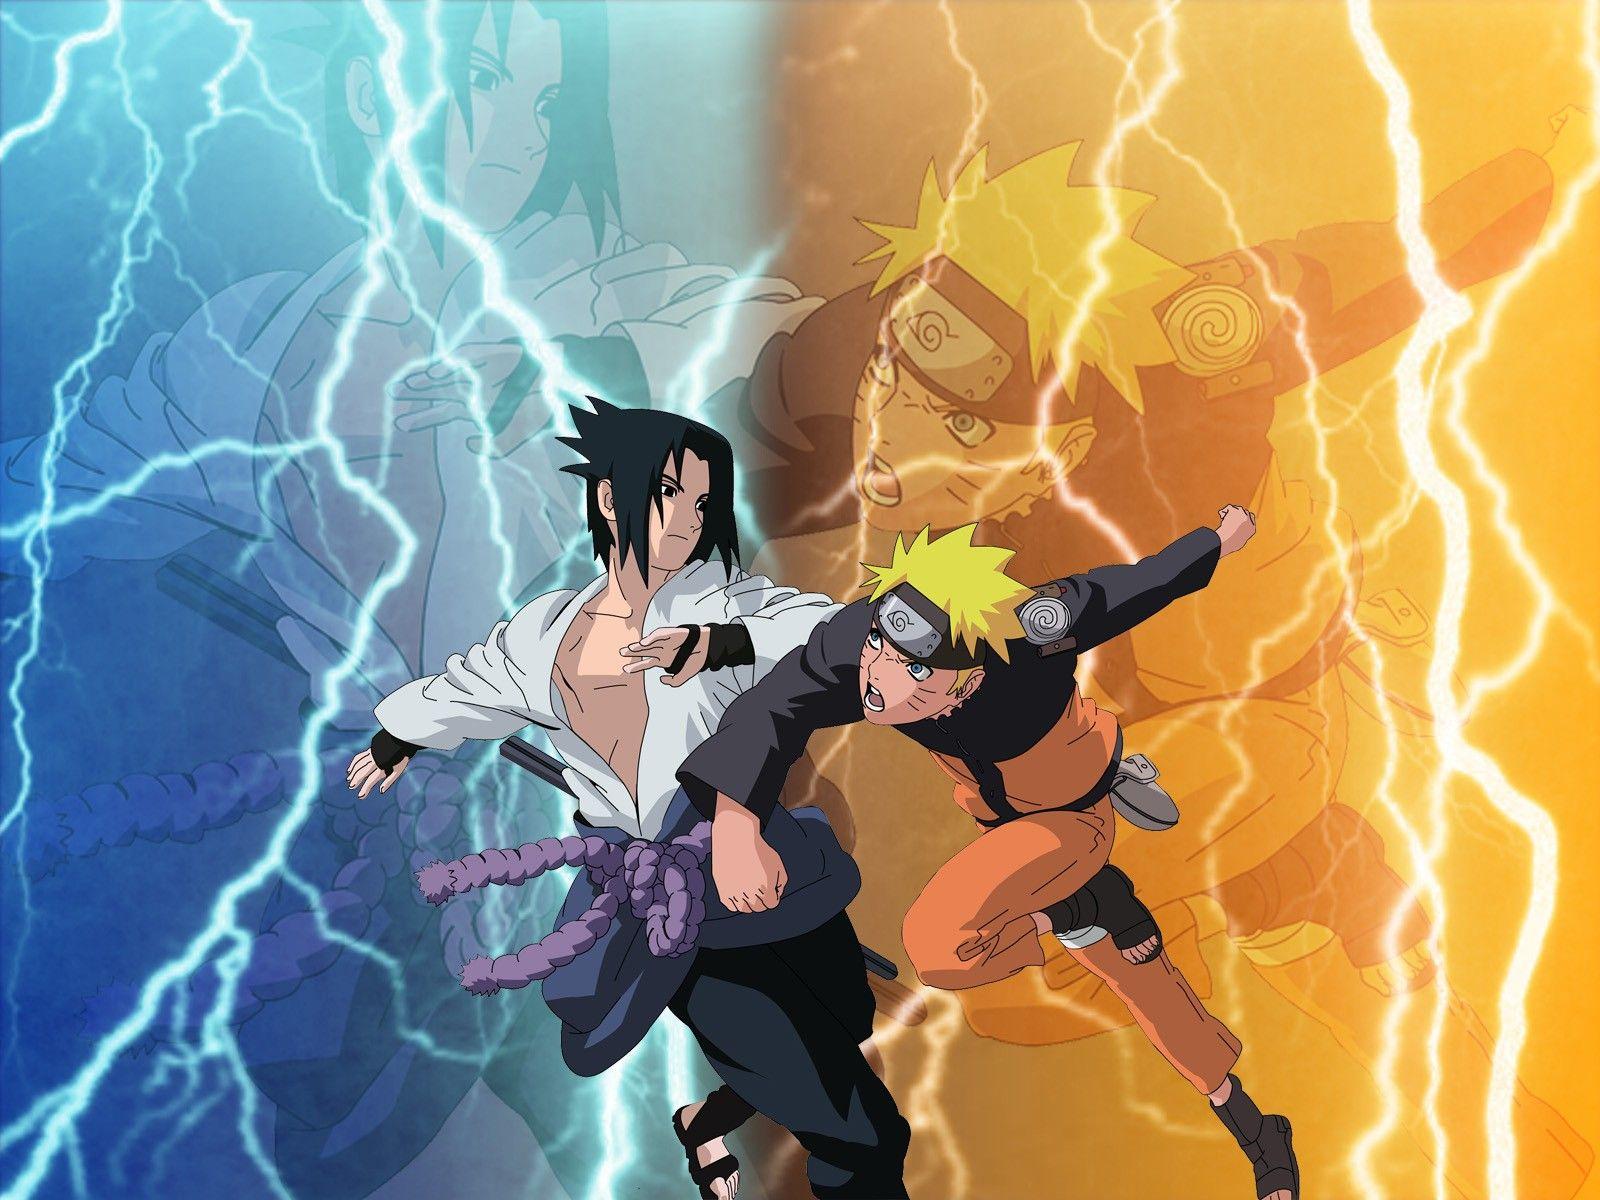 Naruto. Fondos de pantalla de Naruto Shipuden, fondos de escritorio de Naruto. Naruto vs sasuke, Martial arts anime, Best martial arts anime